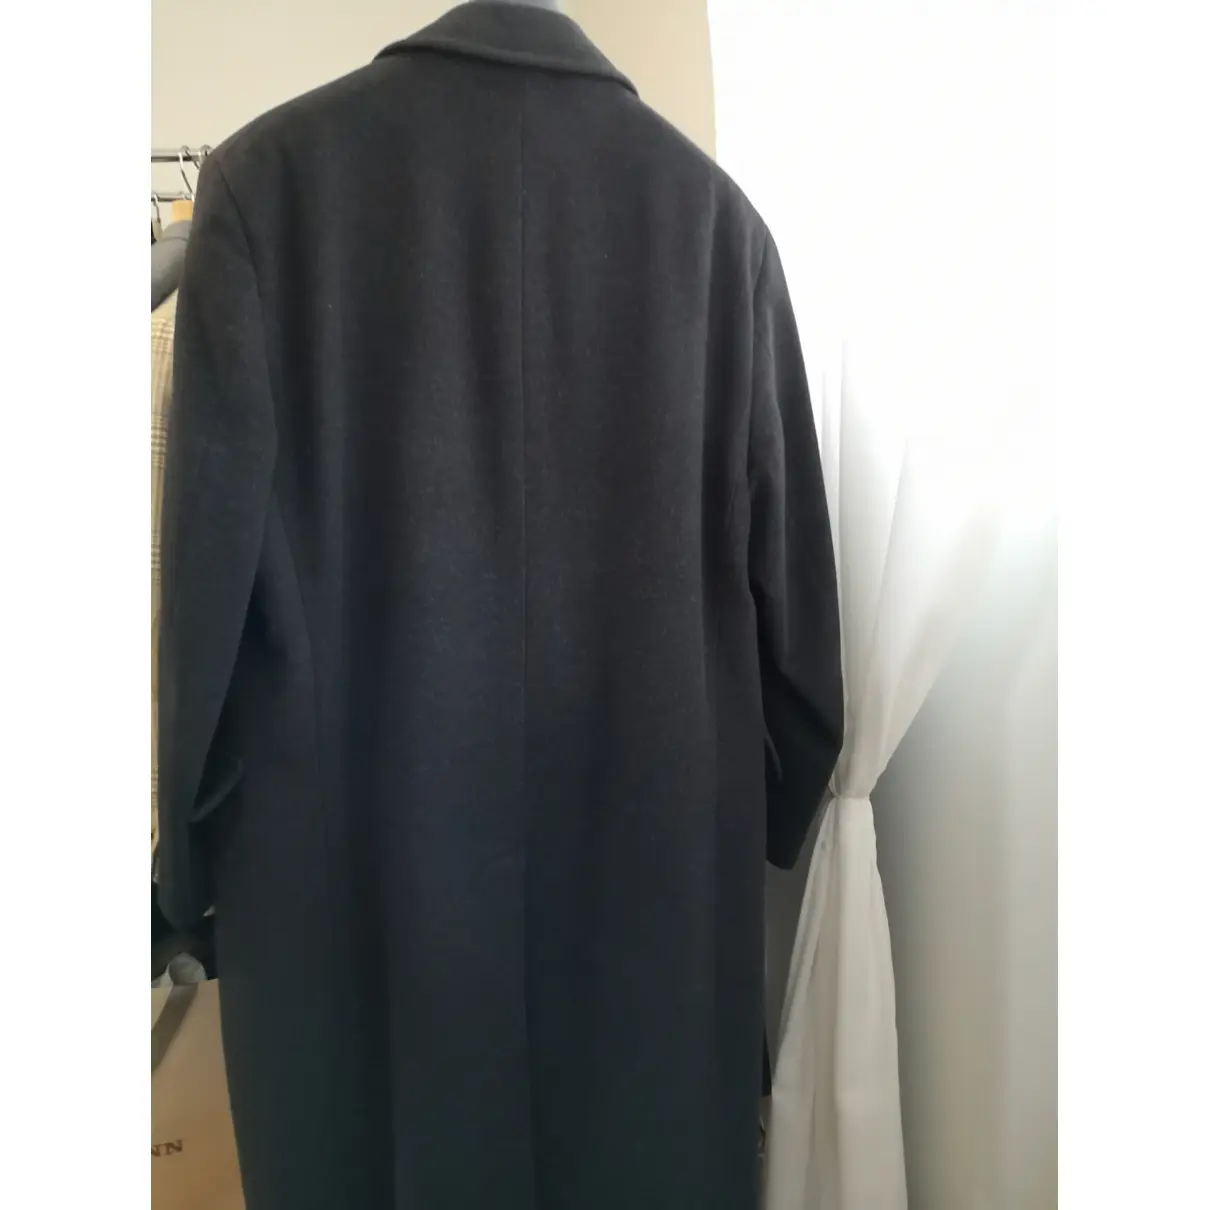 Buy Herno Cashmere coat online